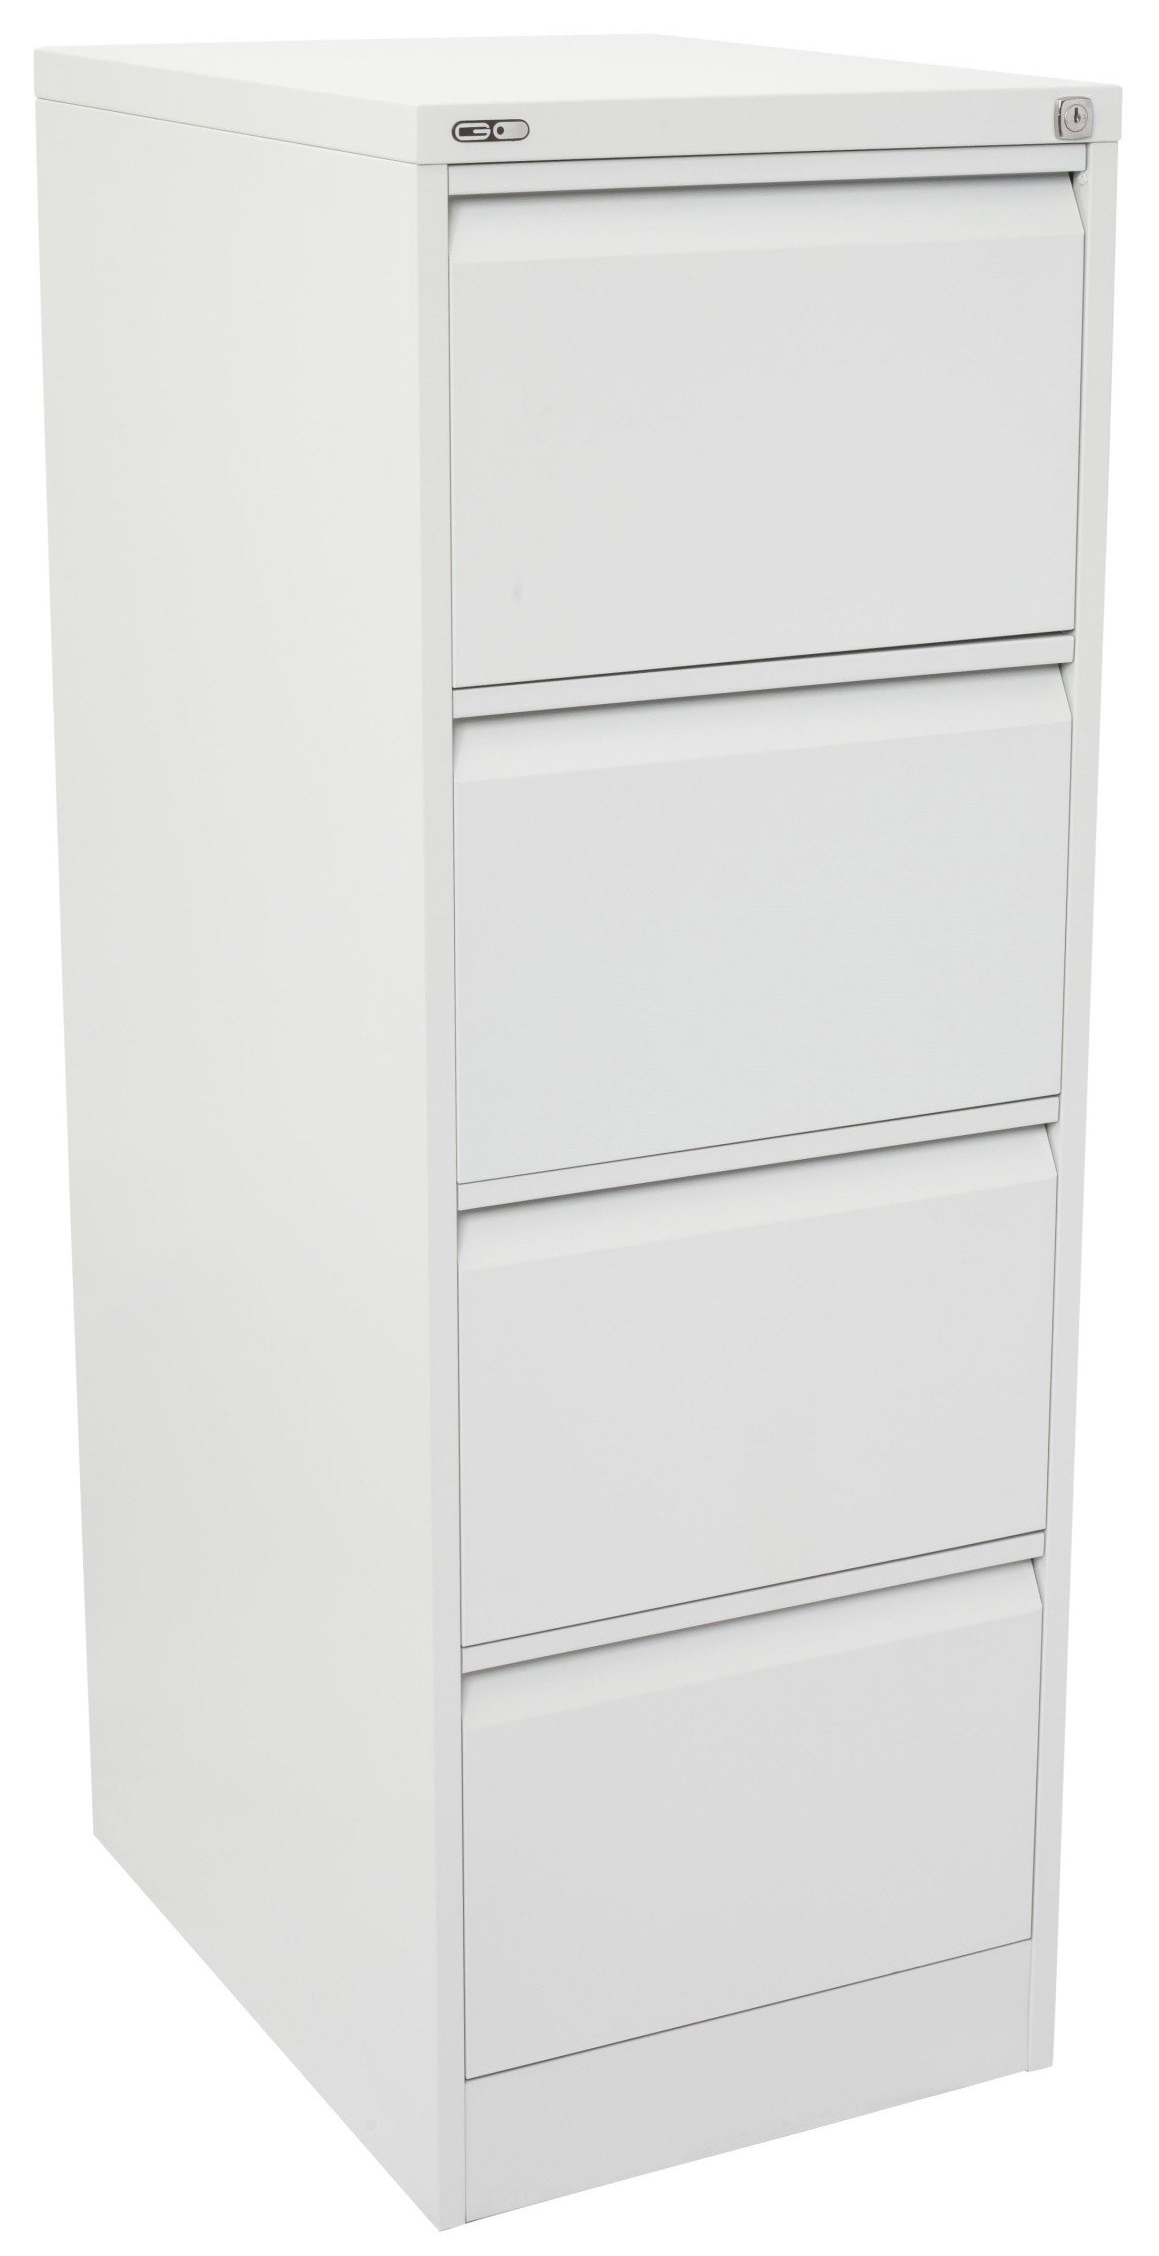 4 drawer metal filing cabinet white